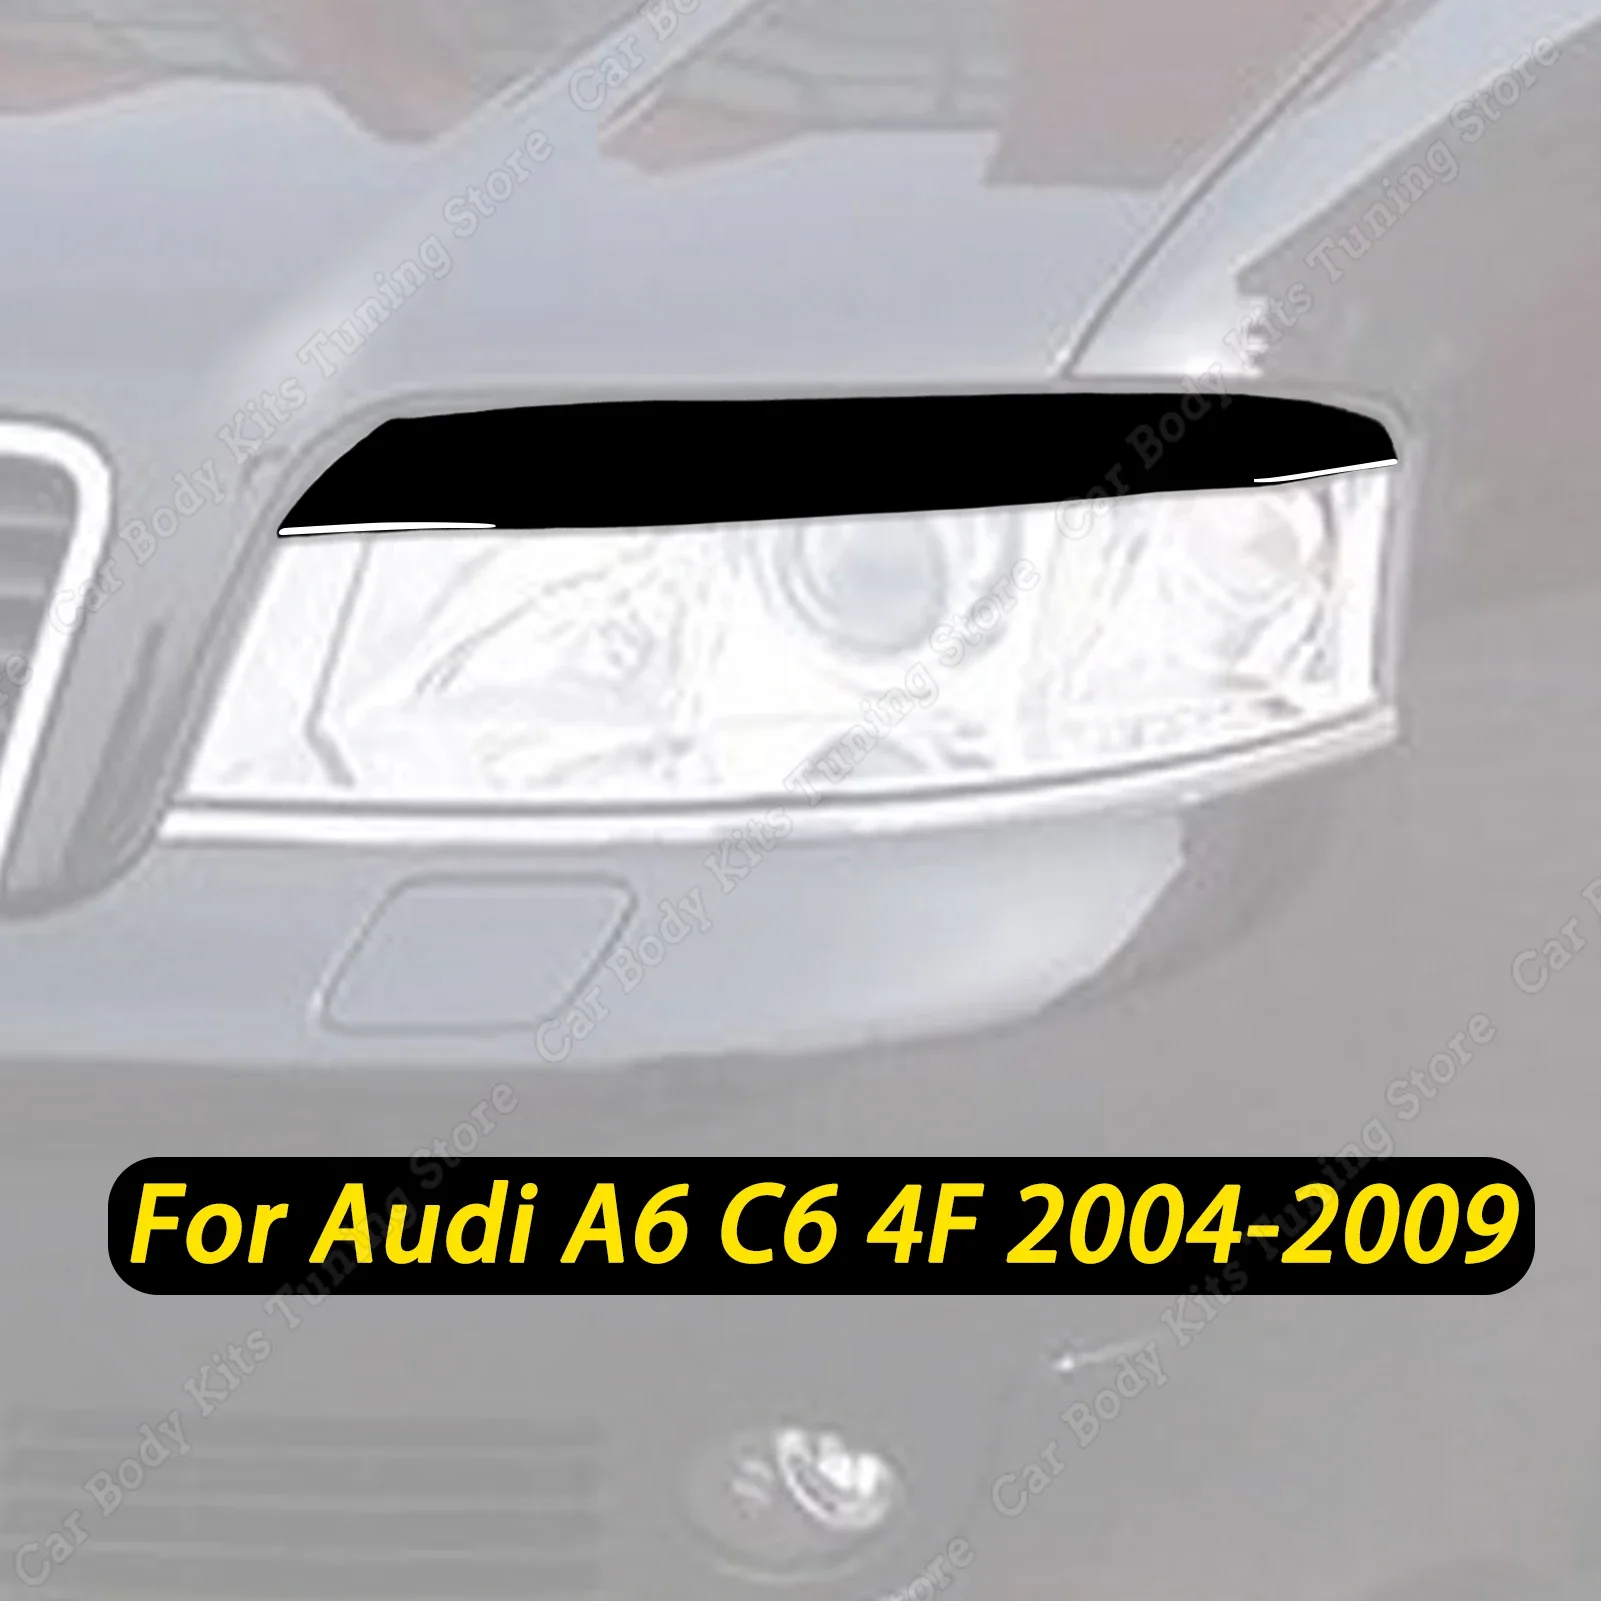 

Автомобильная фара, ВЕКО для бровей для Audi A6 C6 4F 2004 2005 2006 2007 2008 2009, глянцевый черный чехол, отделка, наклейки, аксессуары